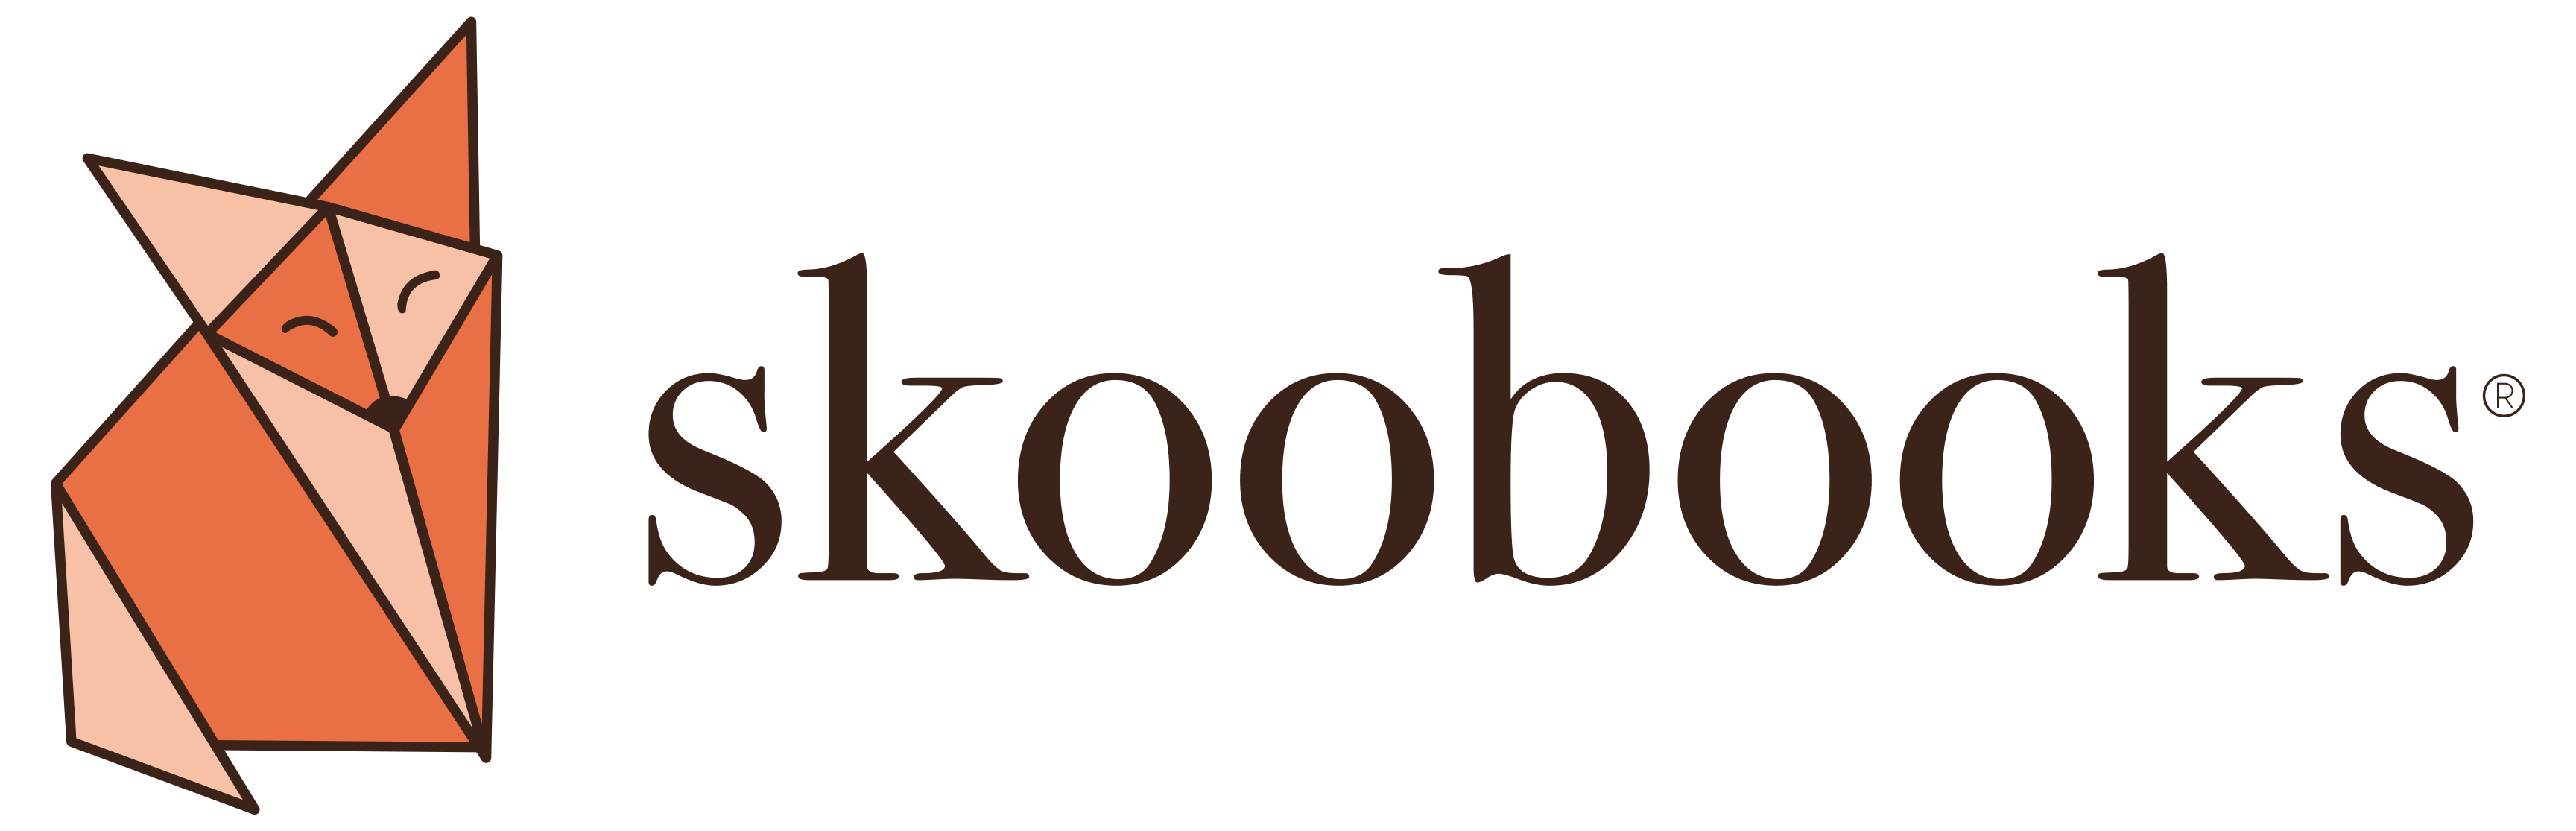 skoobooks